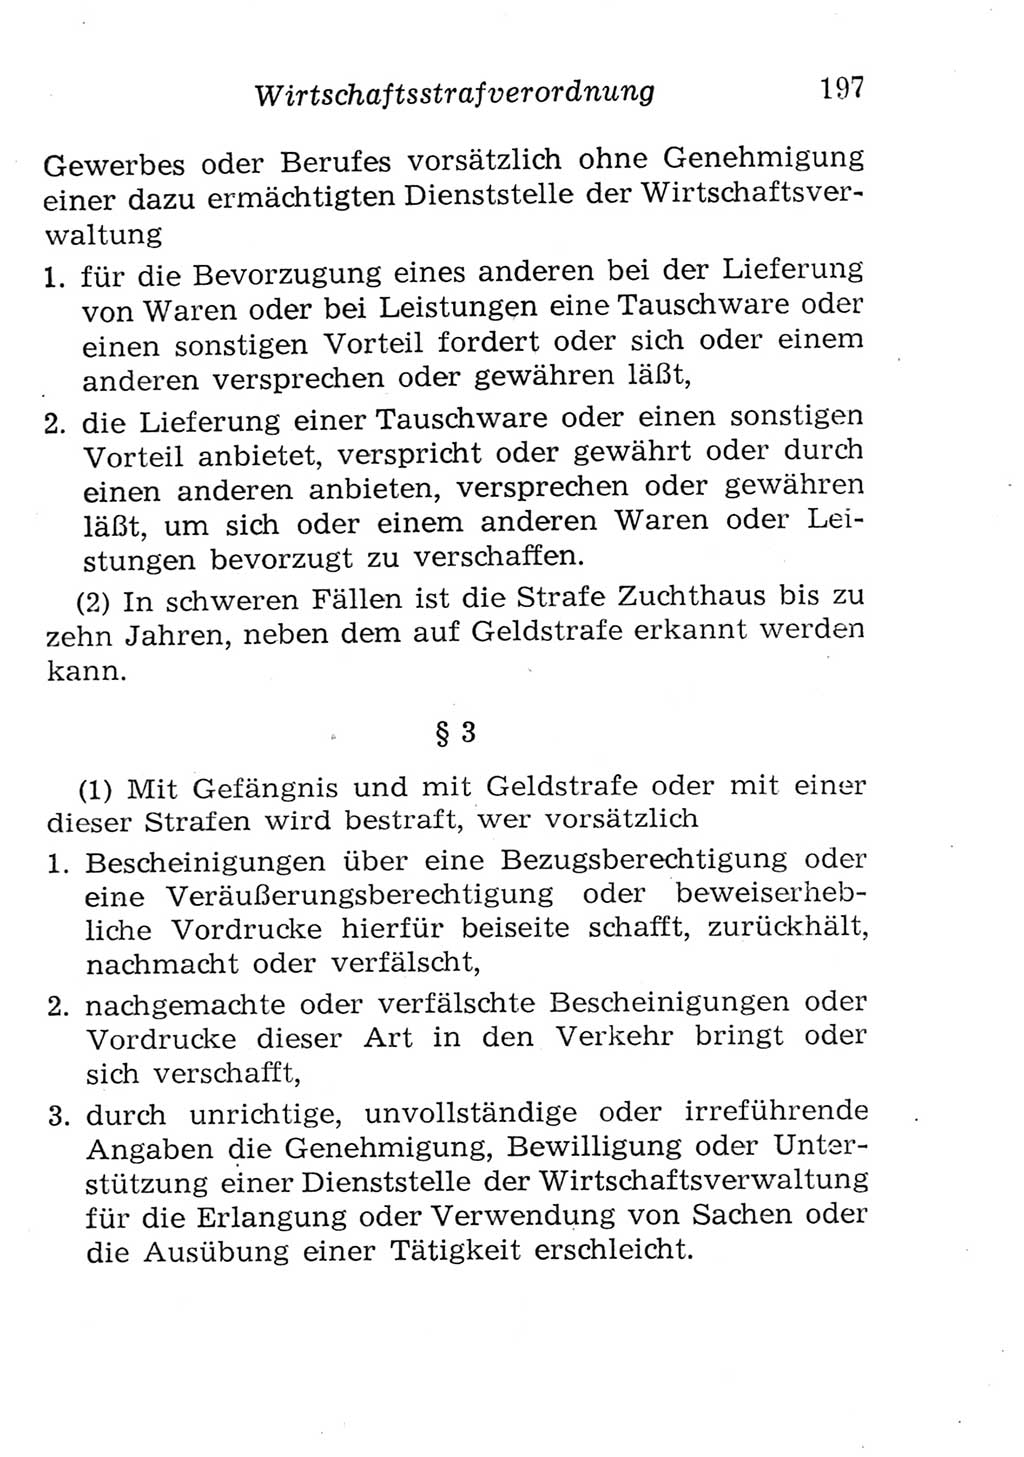 Strafgesetzbuch (StGB) und andere Strafgesetze [Deutsche Demokratische Republik (DDR)] 1957, Seite 197 (StGB Strafges. DDR 1957, S. 197)